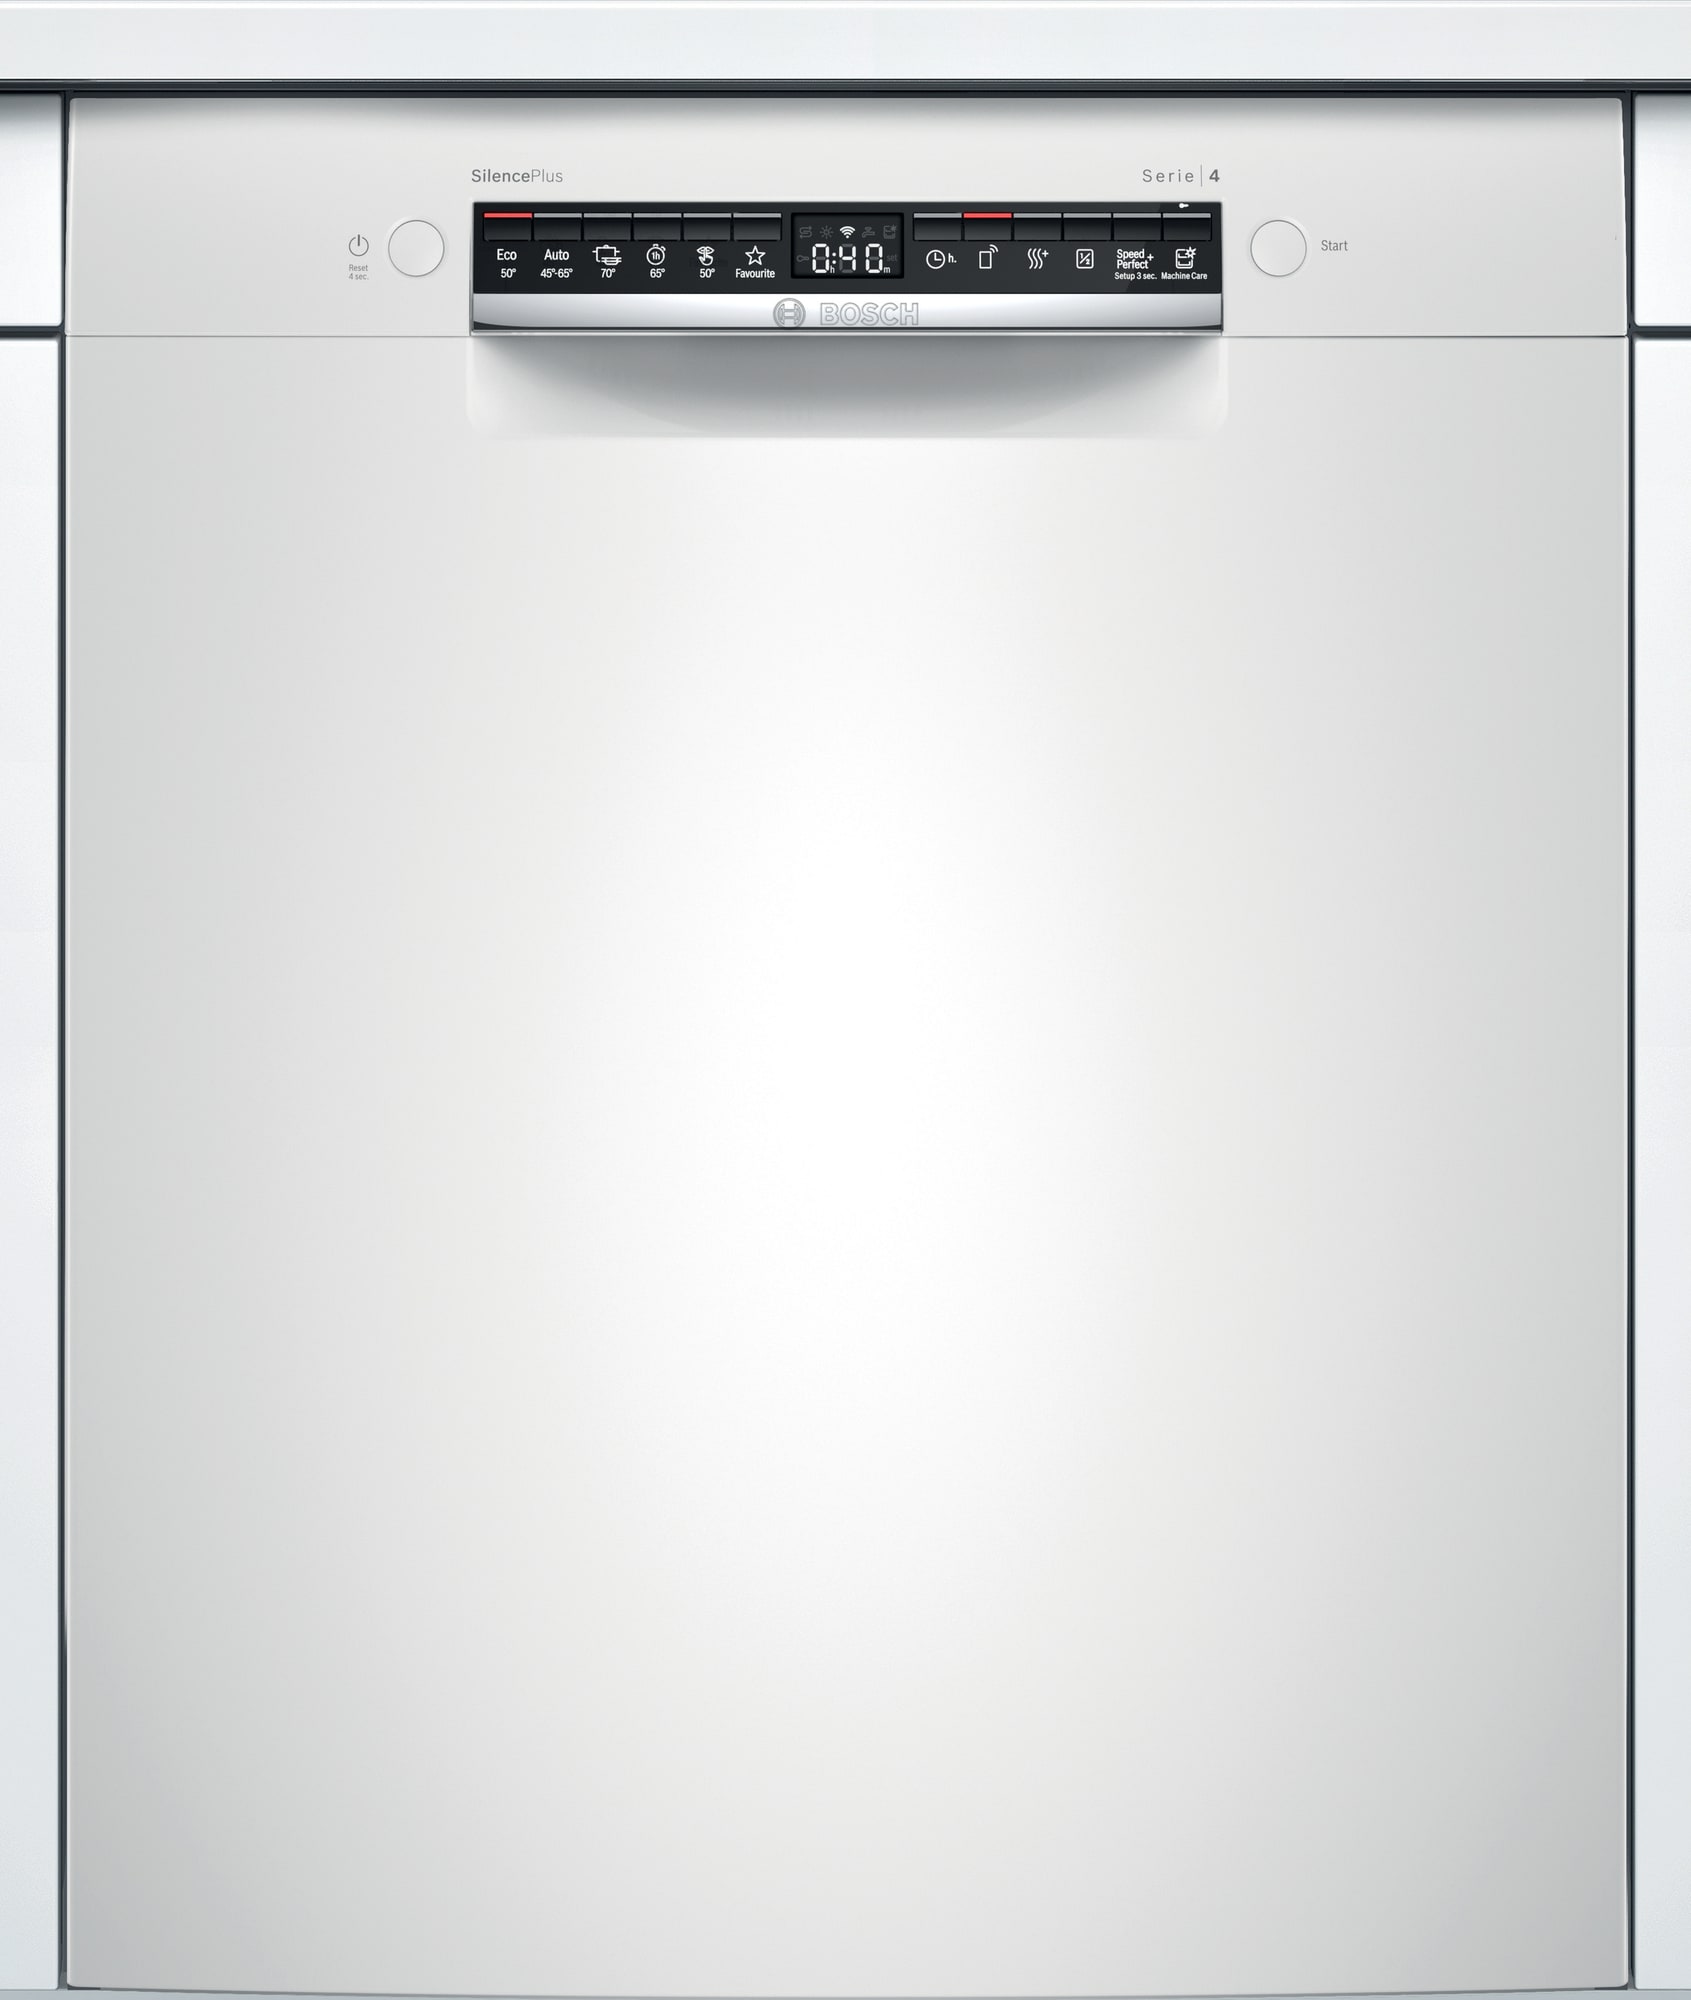 Køb Bosch Opvaskemaskine online til meget lav pris!